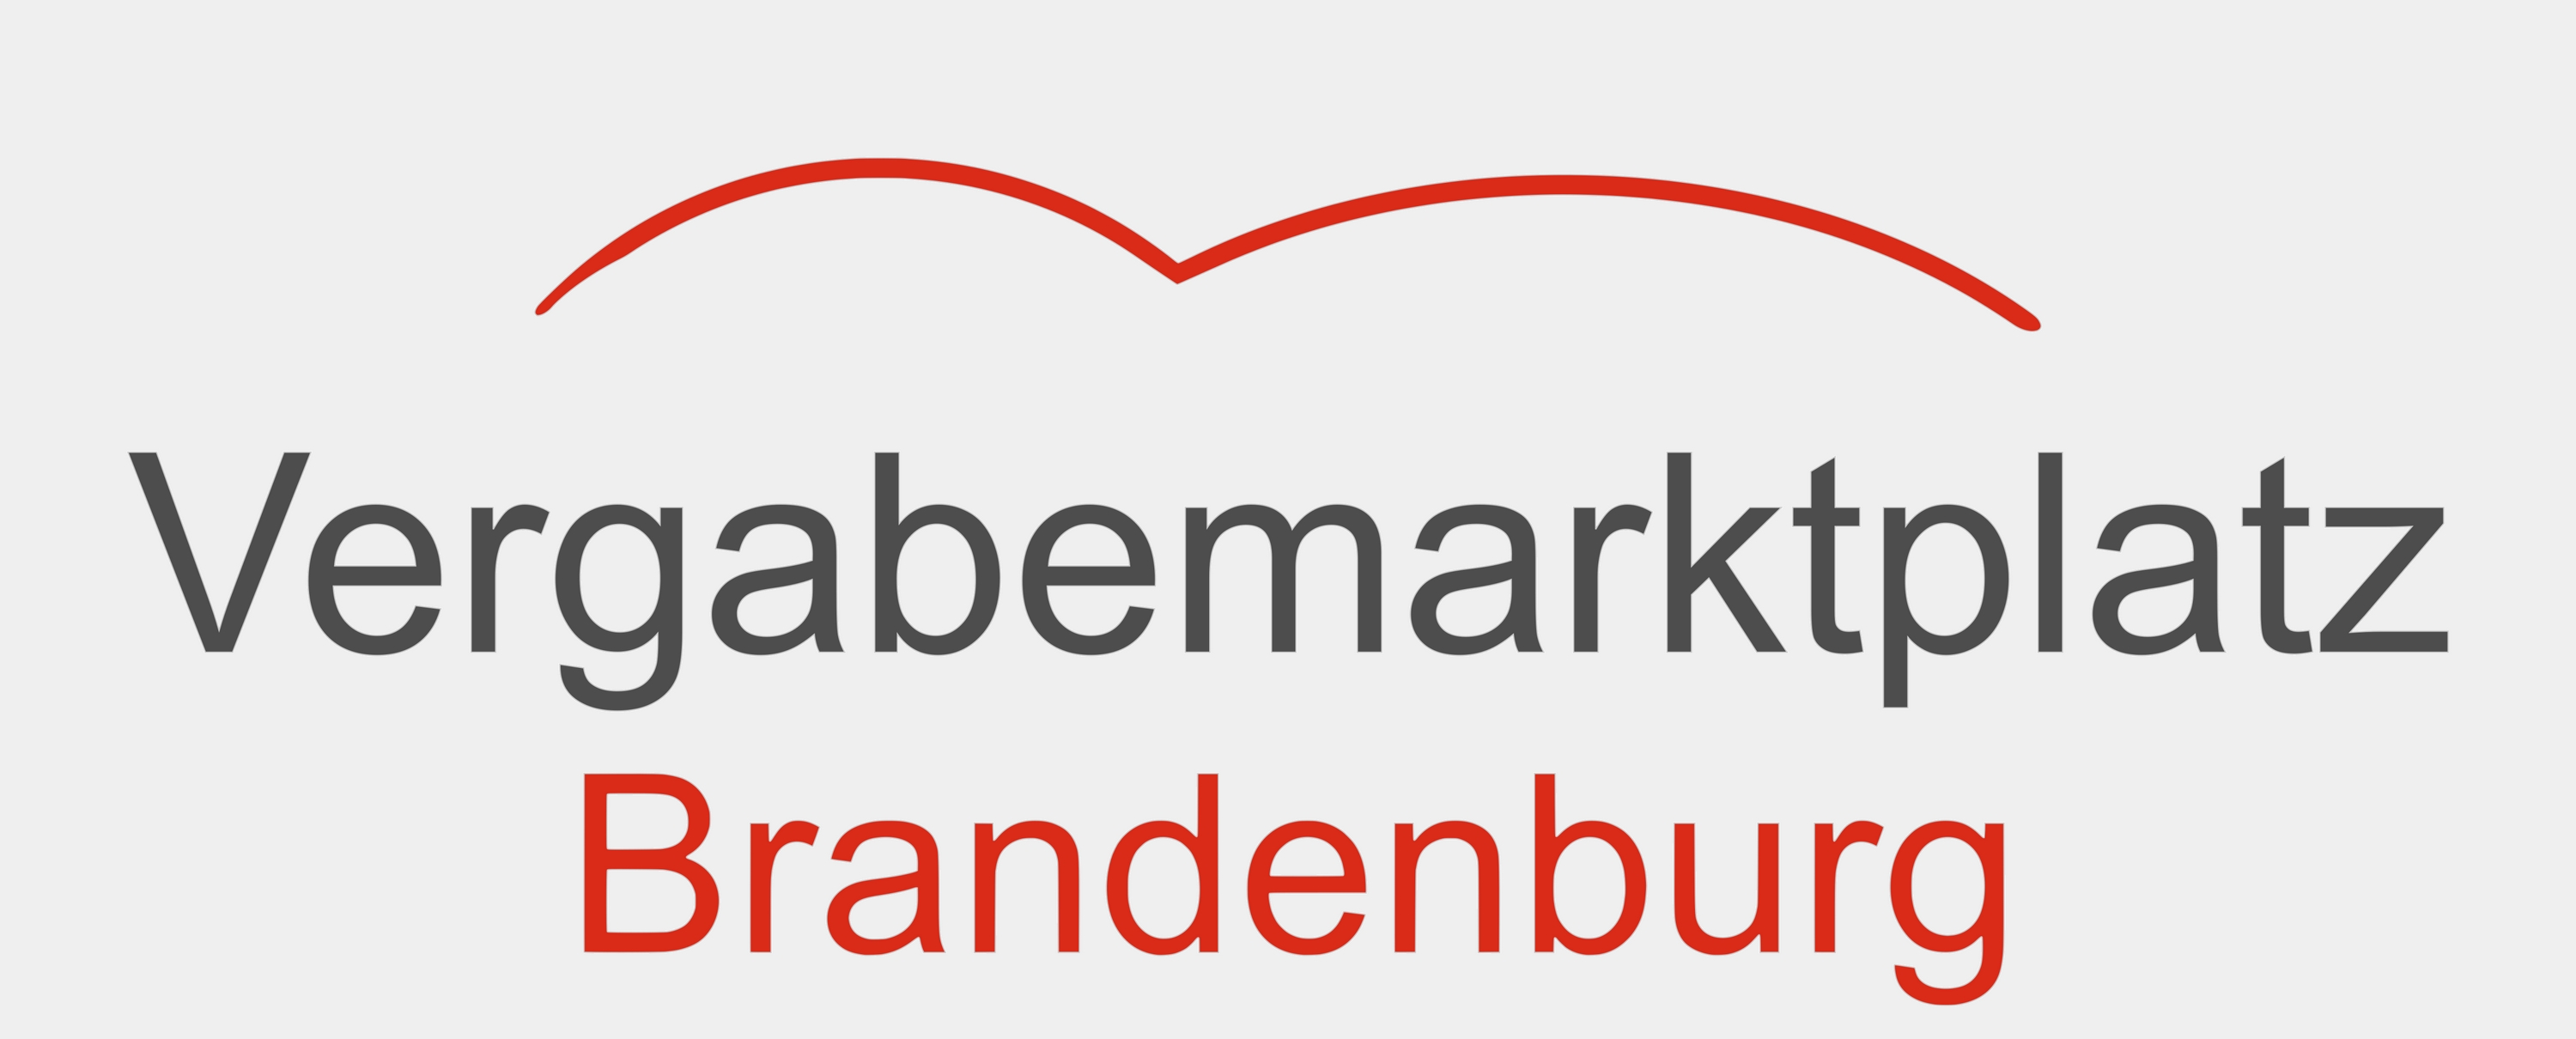 Logo Vergabemarkplatz Brandenburg